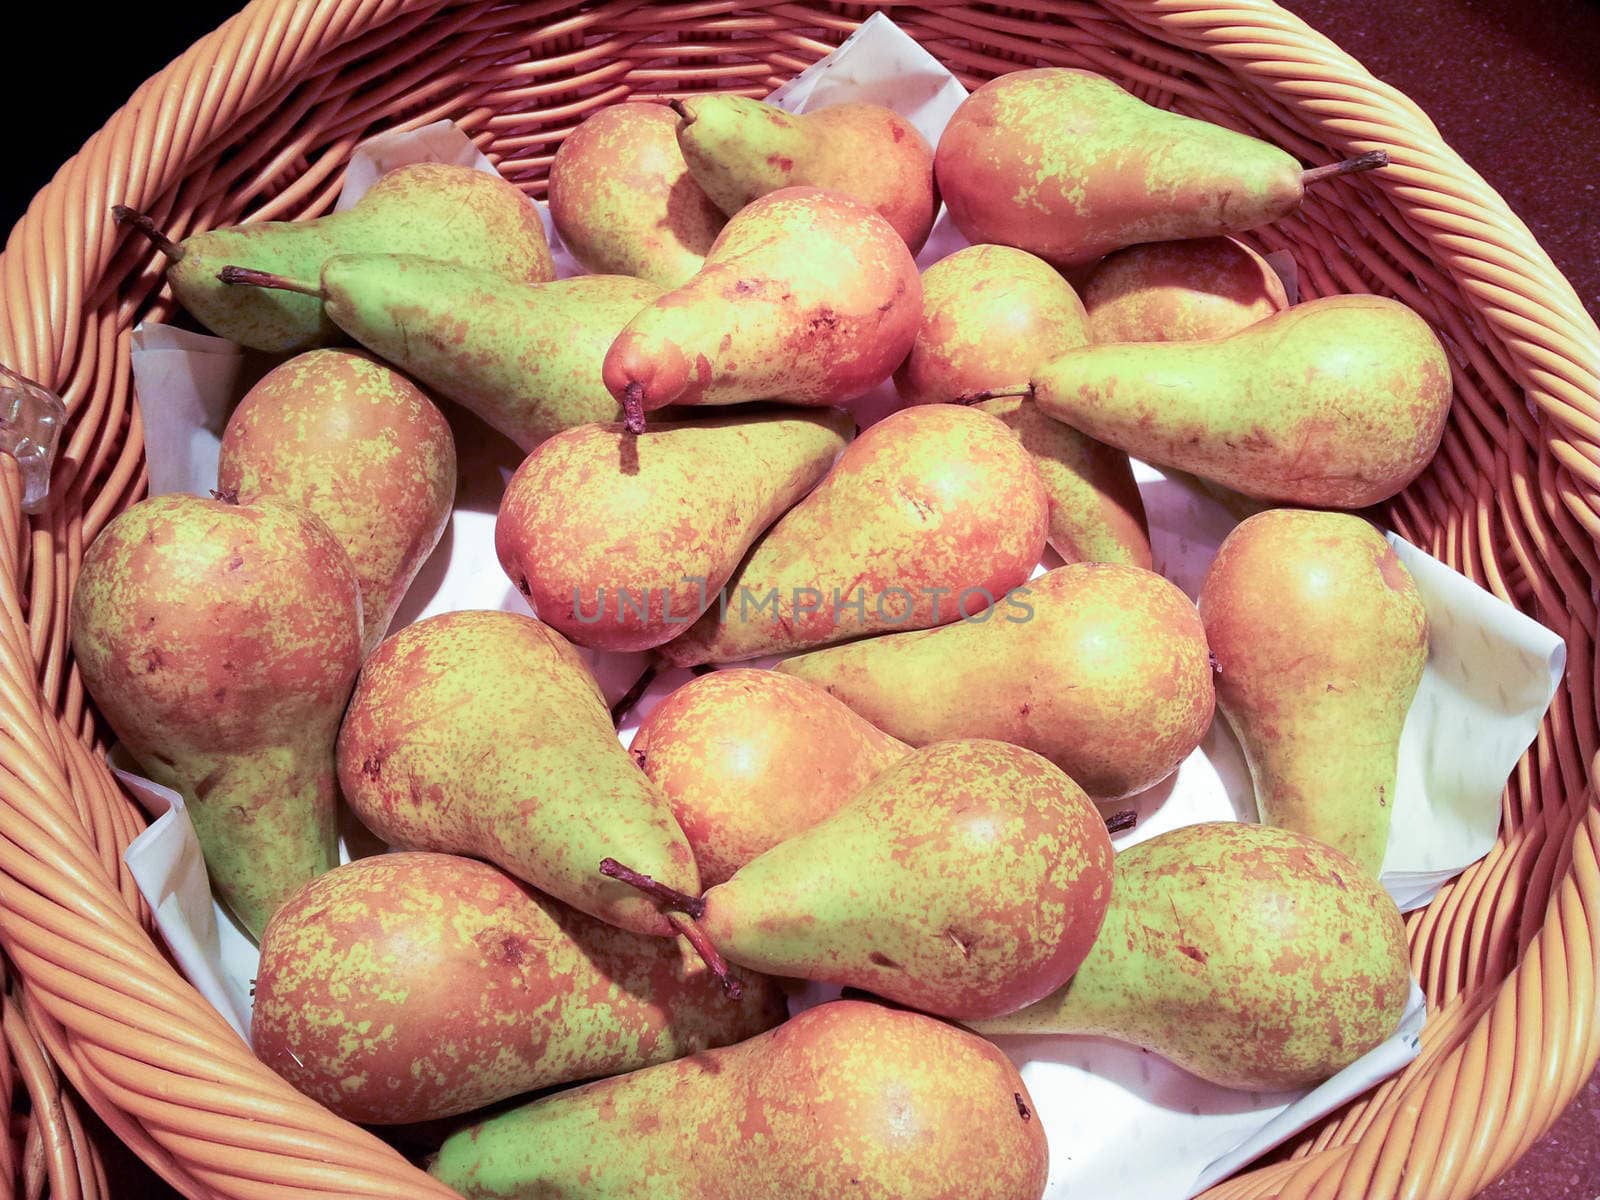 Pears in basket by Arvebettum